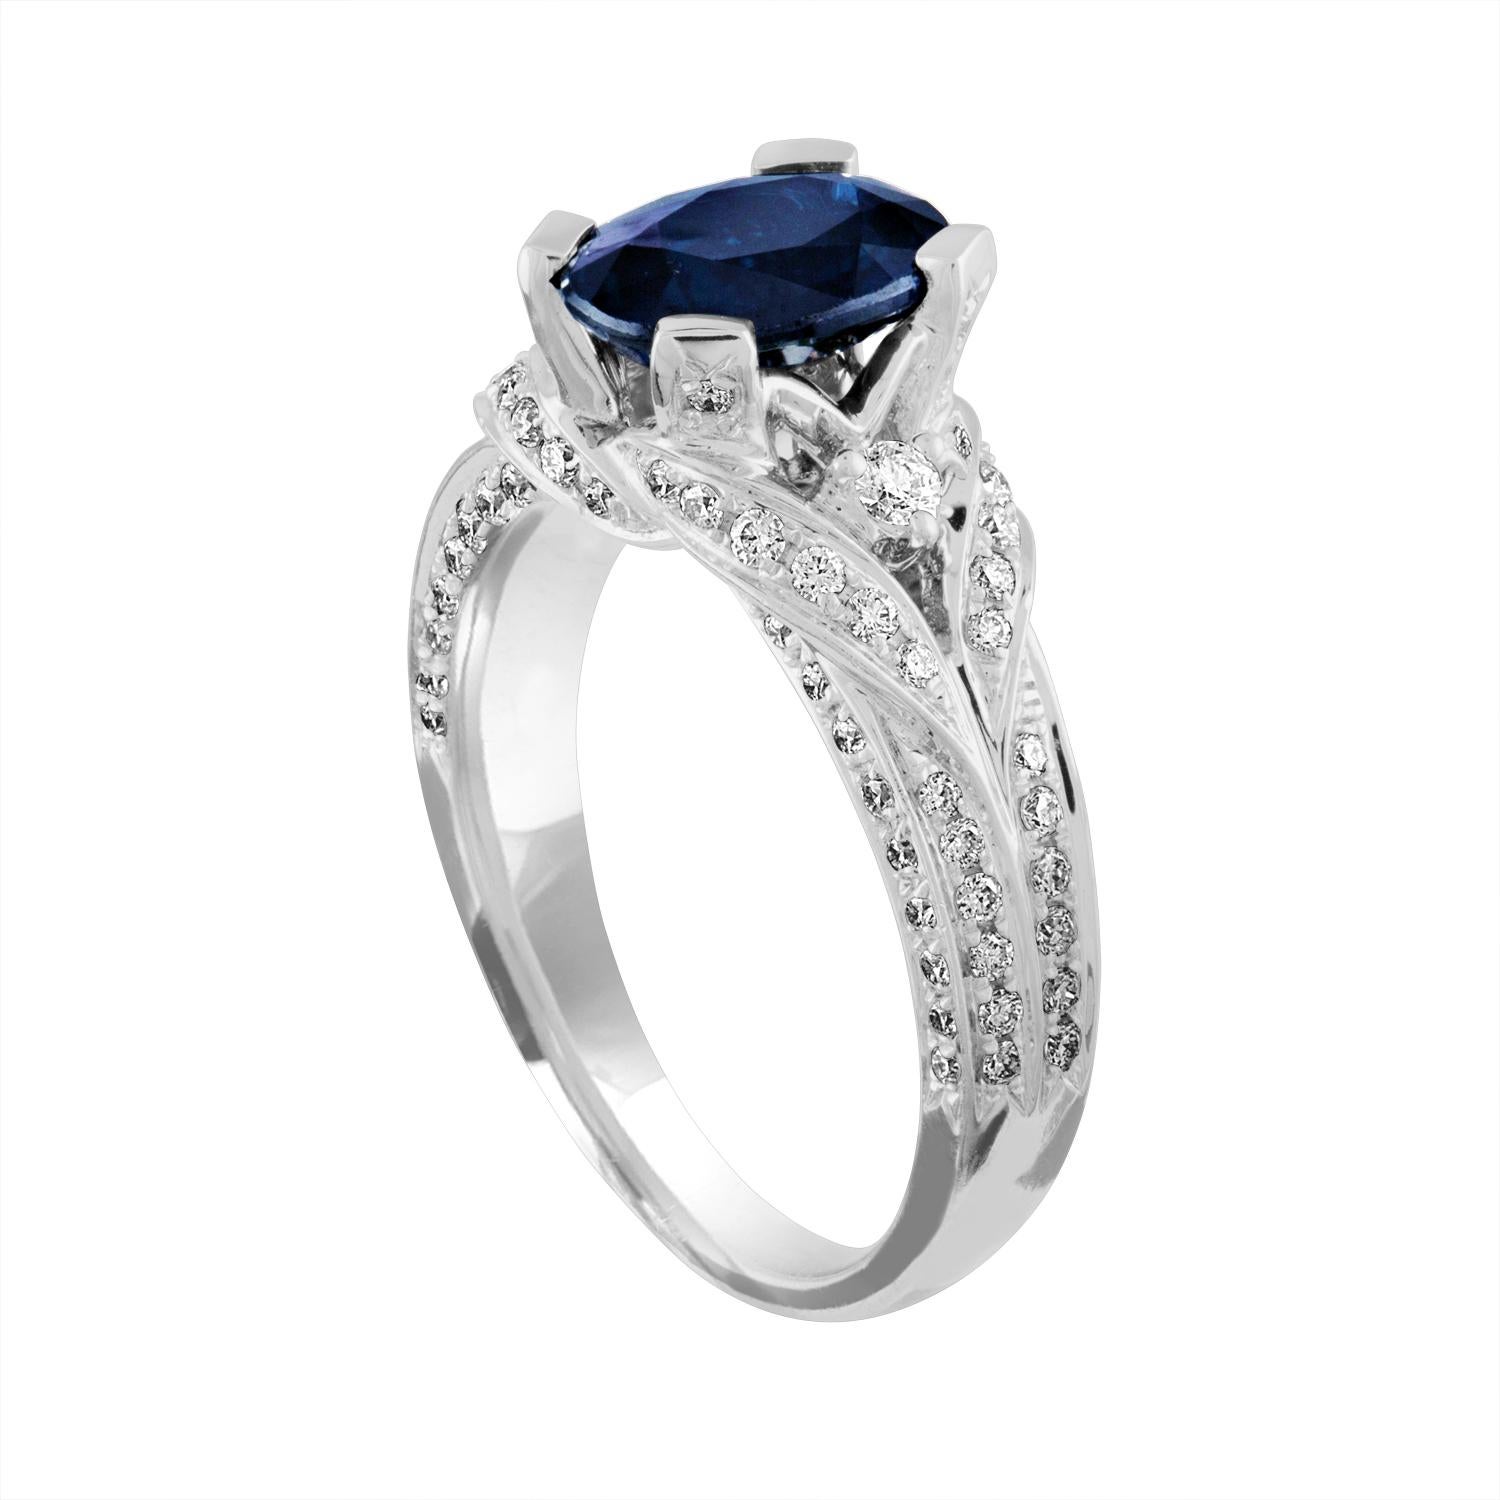 Magnifique bague en saphir bleu.
La bague est en or blanc 18 carats.
Le saphir bleu est ovale et mesure 2,16 carats.
La pierre est chauffée.
Il y a 0,75 carat de diamants F/G VS/SI.
L'anneau est une taille 6.75, de bonne taille.
L'anneau pèse 6.3